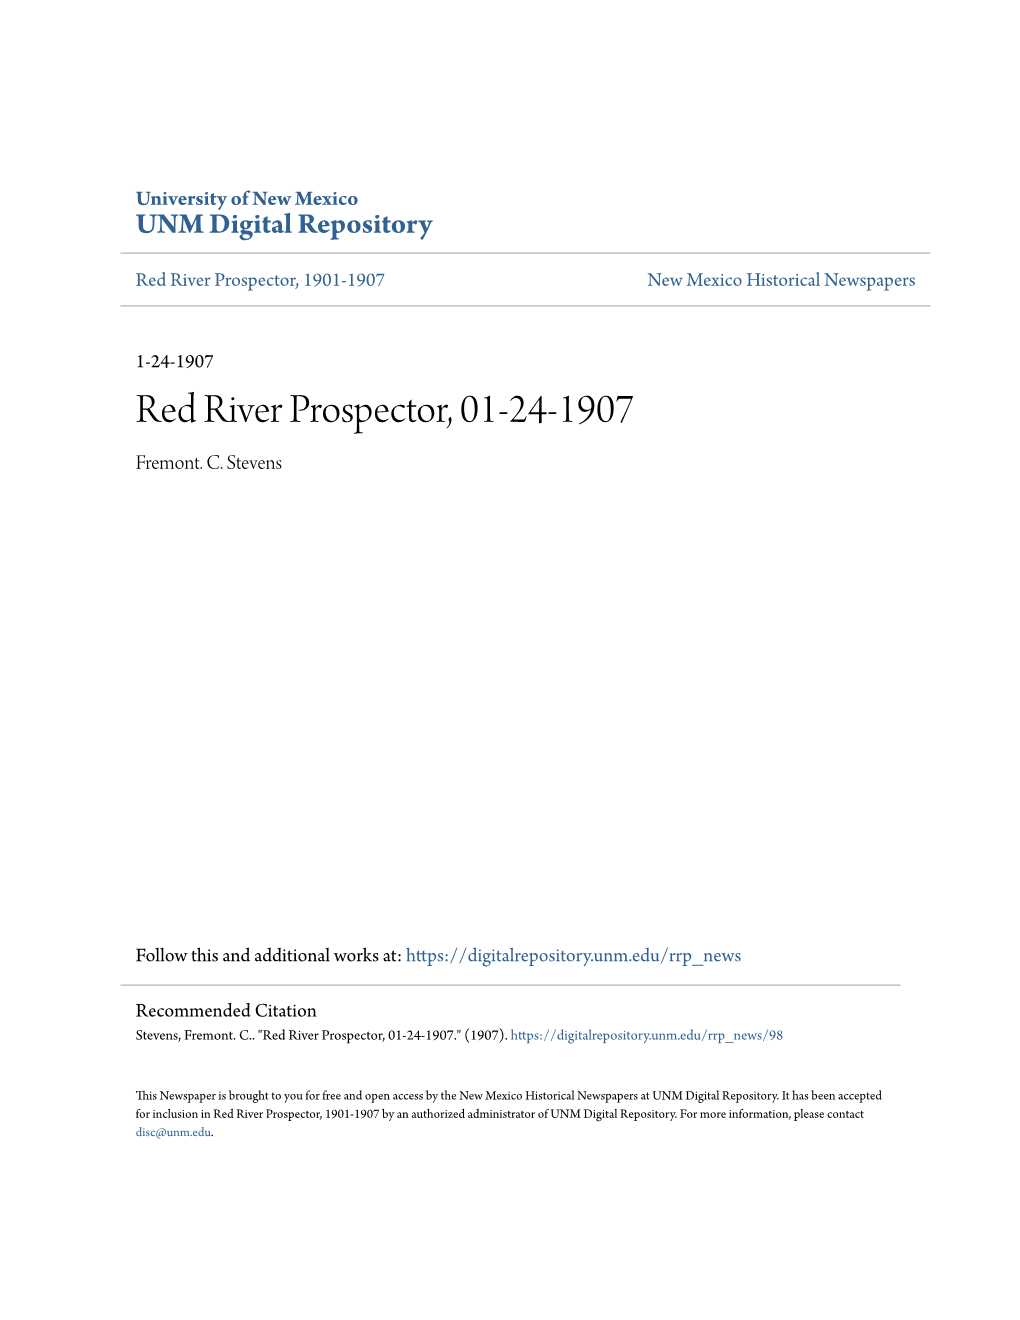 Red River Prospector, 01-24-1907 Fremont